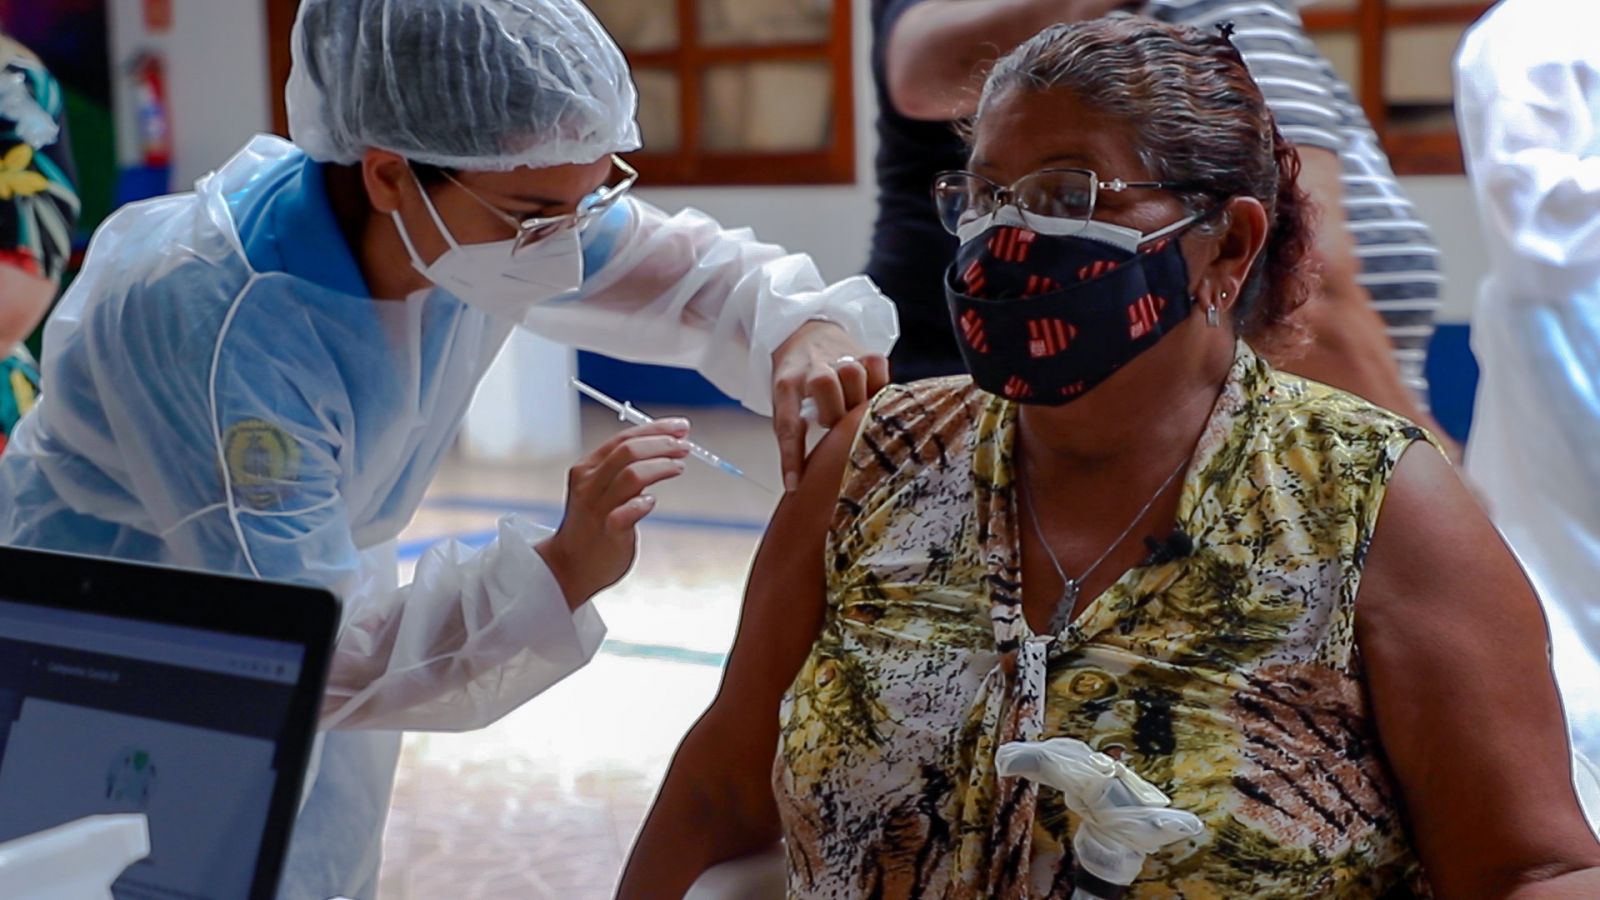 Porto Velho recebe vacina AstraZeneca para continuar imunização de idosos com mais de 60 anos - News Rondônia